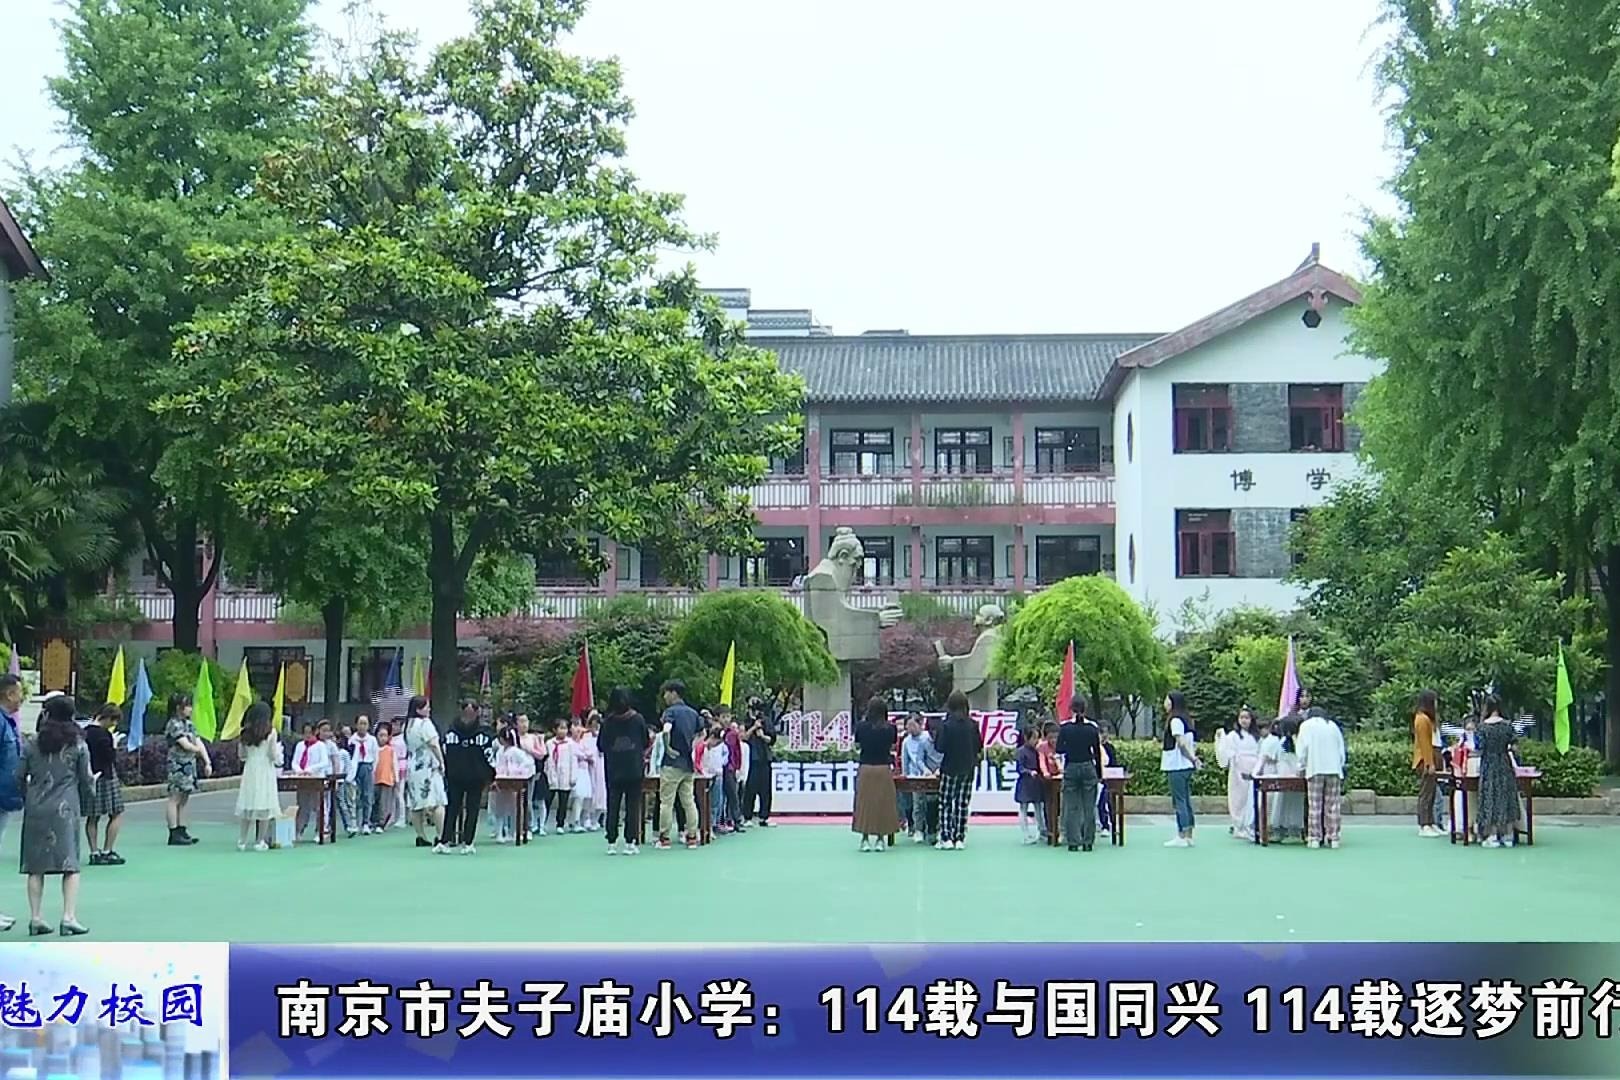 郑州市惠济区大庙小学让孩子们在春节进行“感念亲情”自我教育